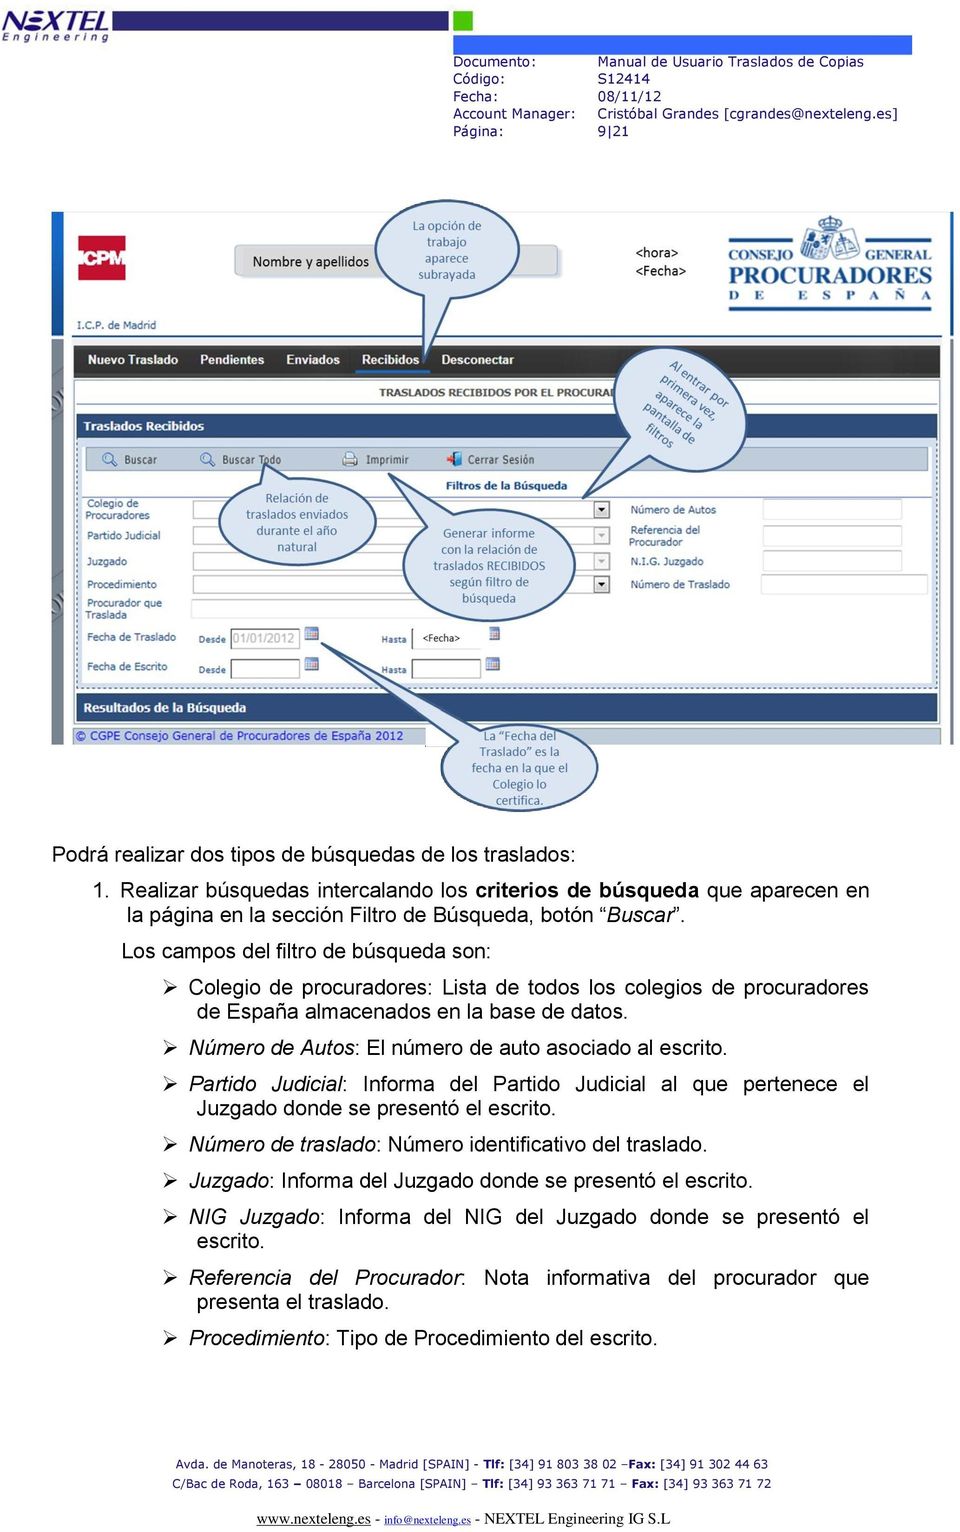 Los campos del filtro de búsqueda son: Colegio de procuradores: Lista de todos los colegios de procuradores de España almacenados en la base de datos.